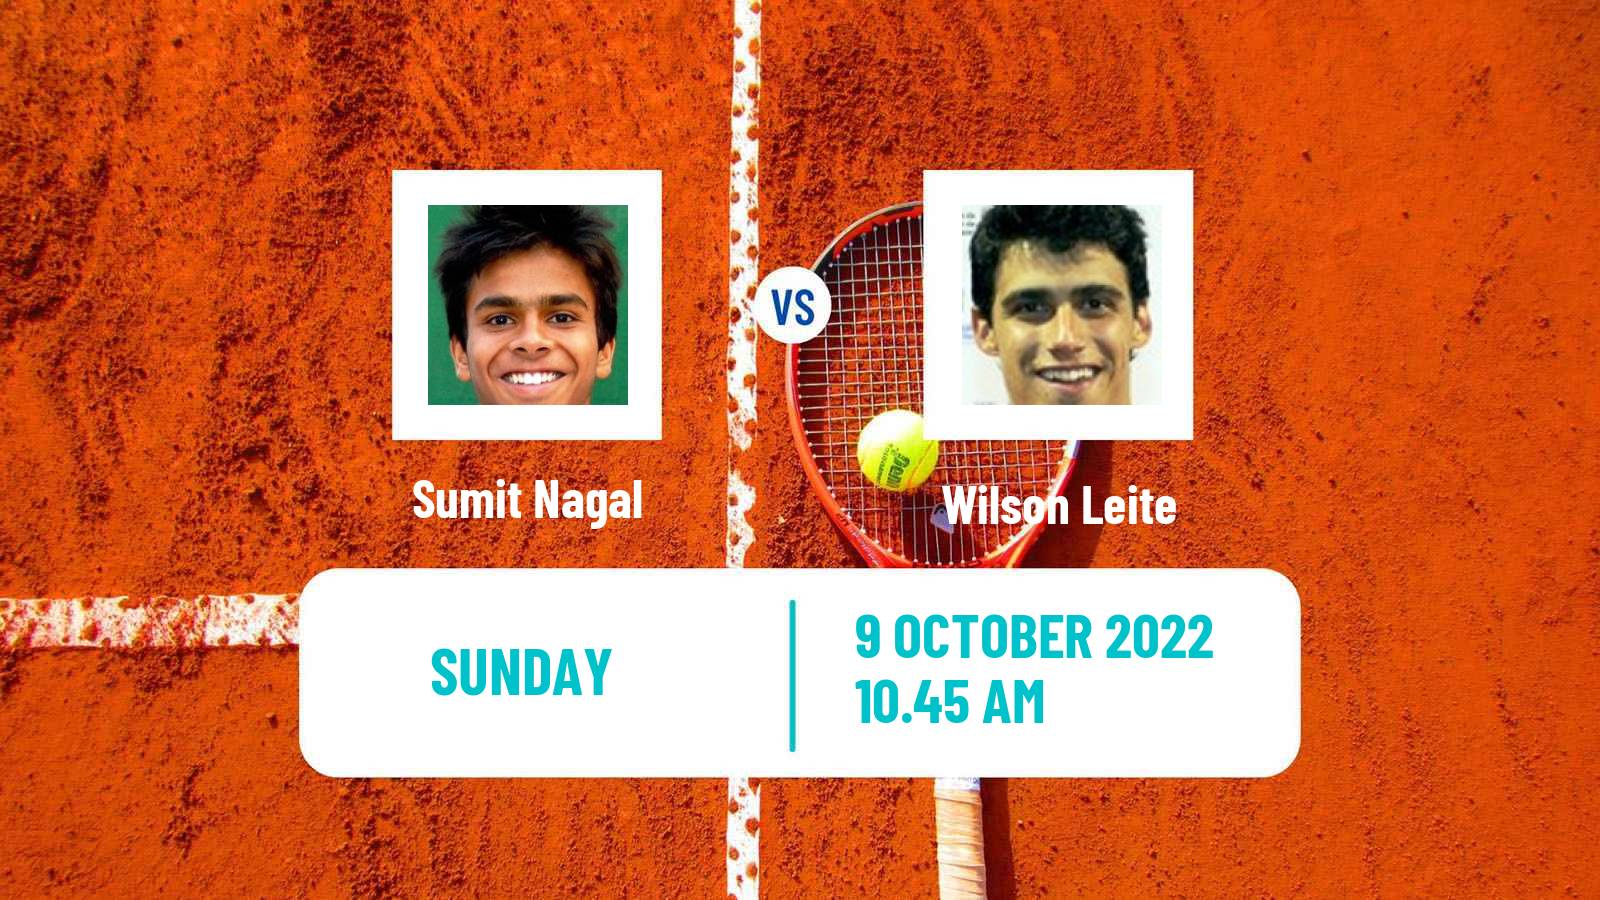 Tennis ATP Challenger Sumit Nagal - Wilson Leite